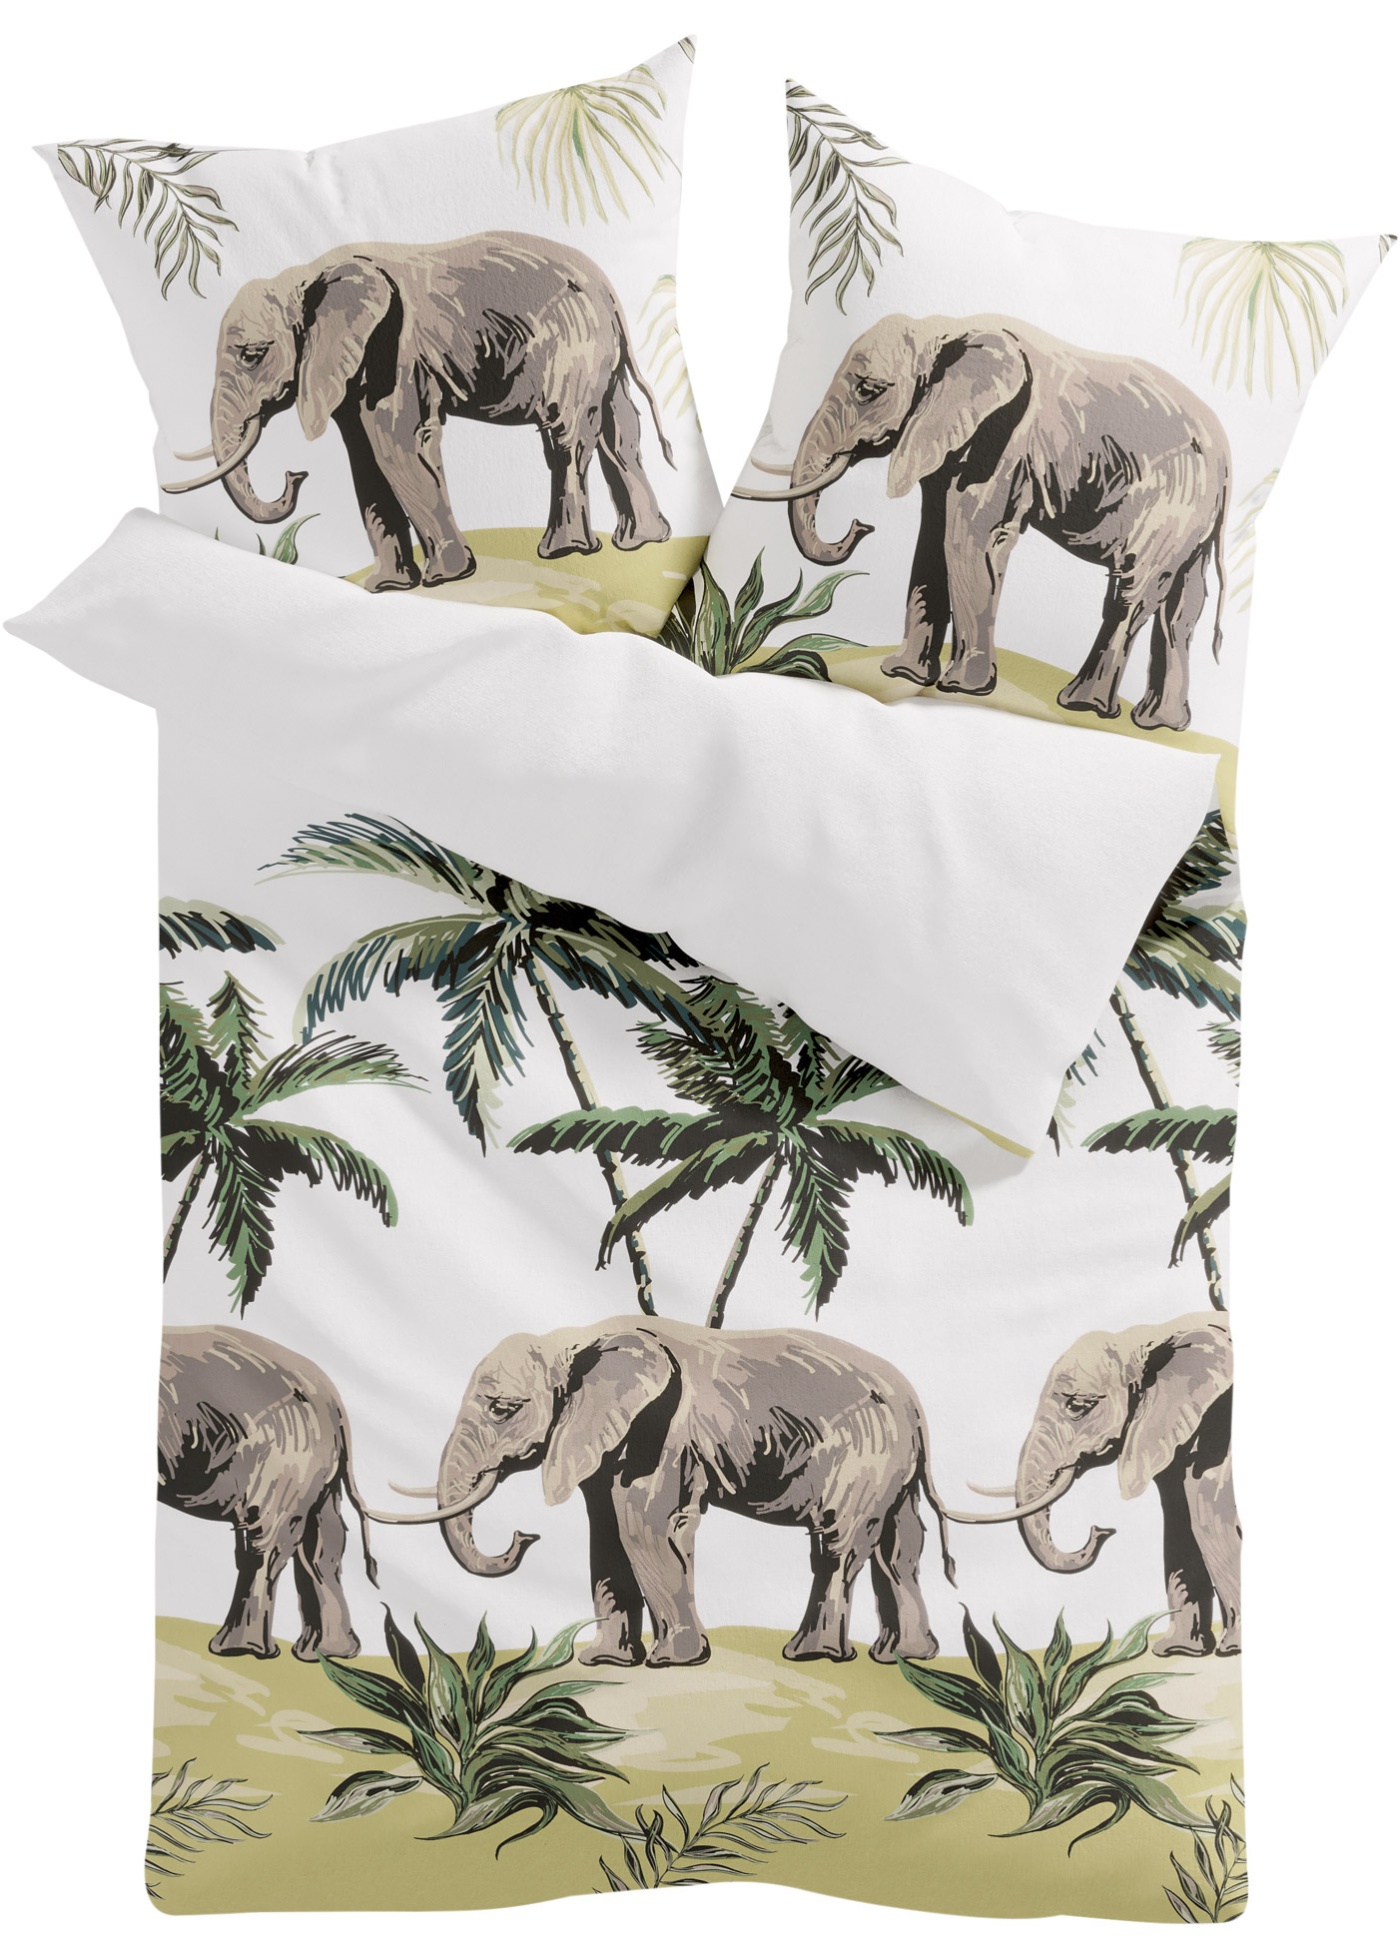 Parure de lit avec éléphants